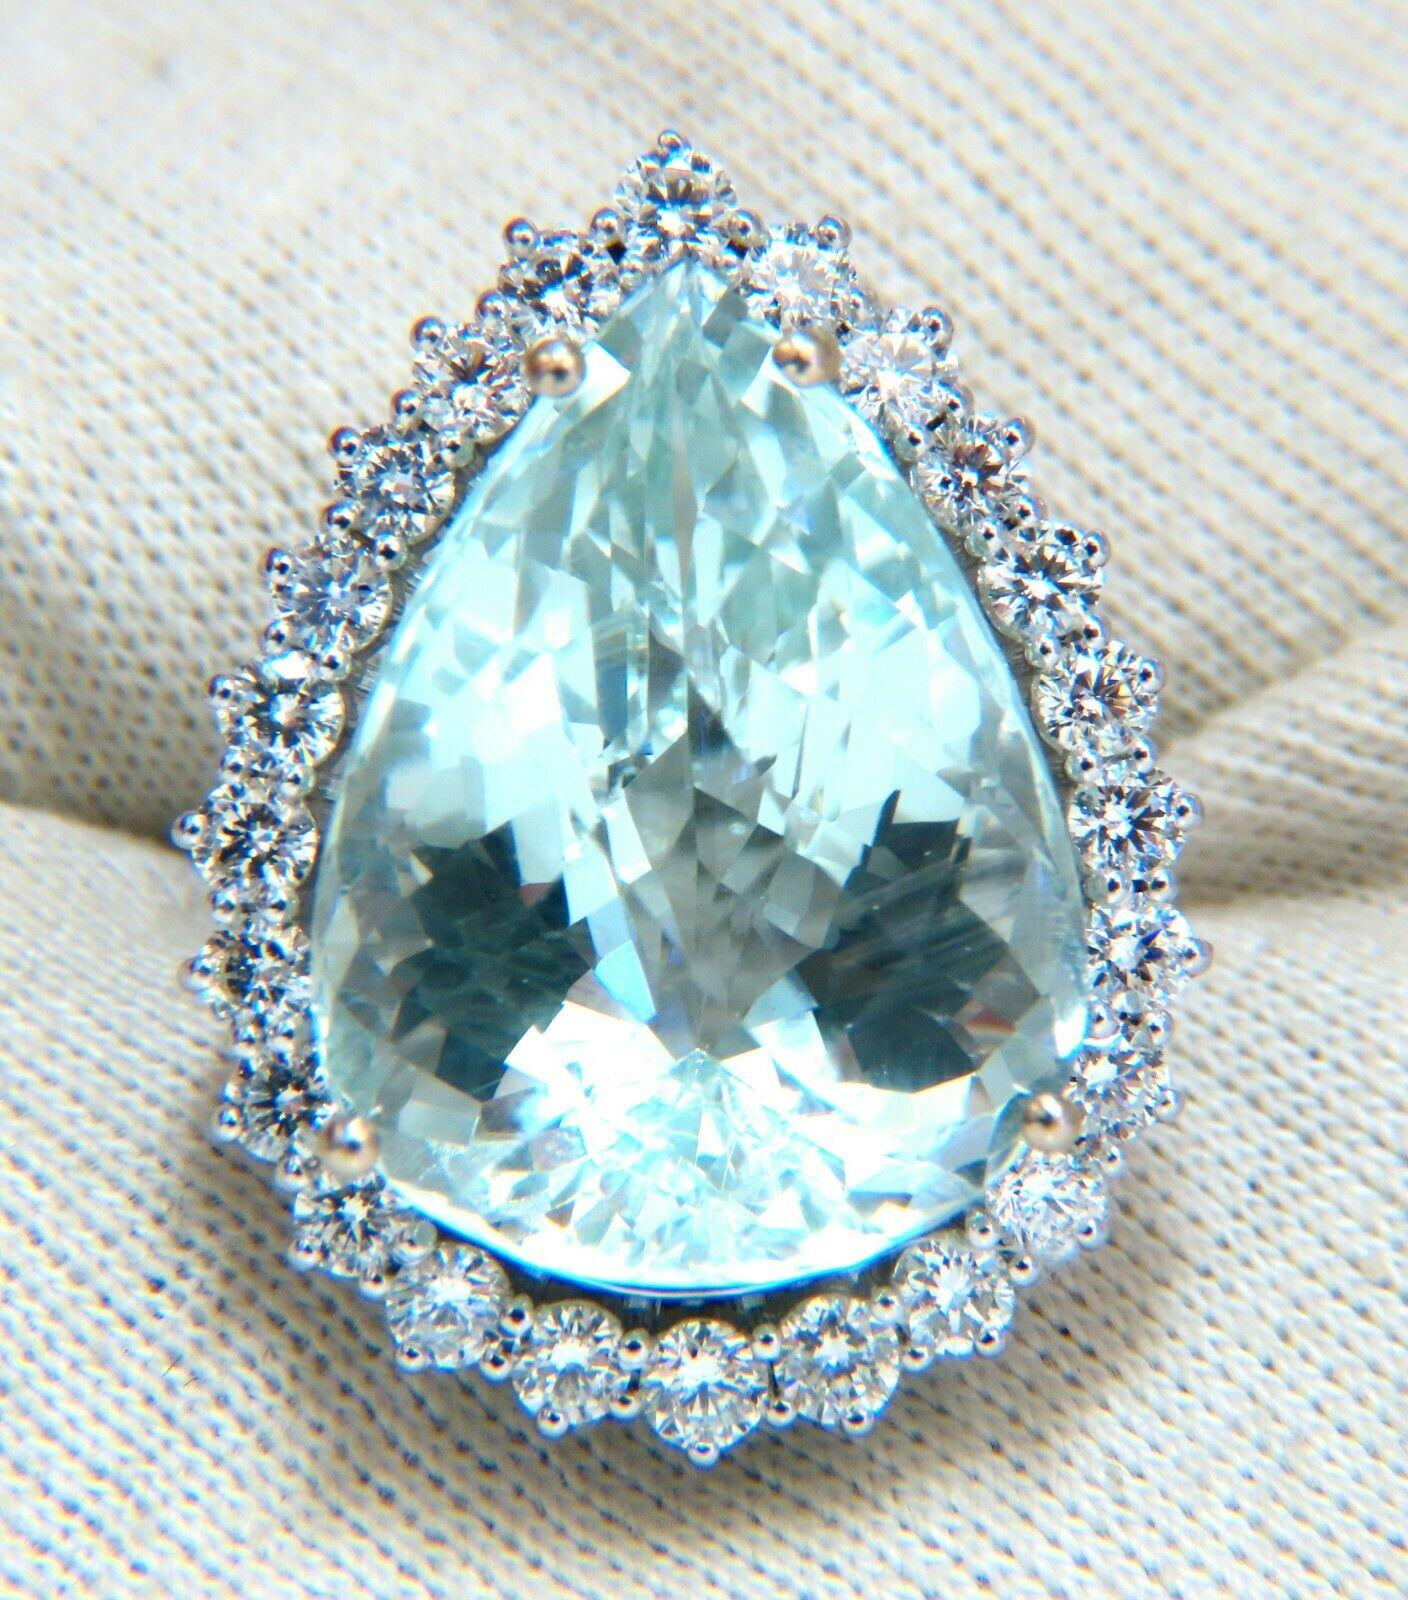 Women's or Men's GIA Certified 29.31 Carat Natural Pear Shaped Aquamarine Diamonds Ring 14 Karat